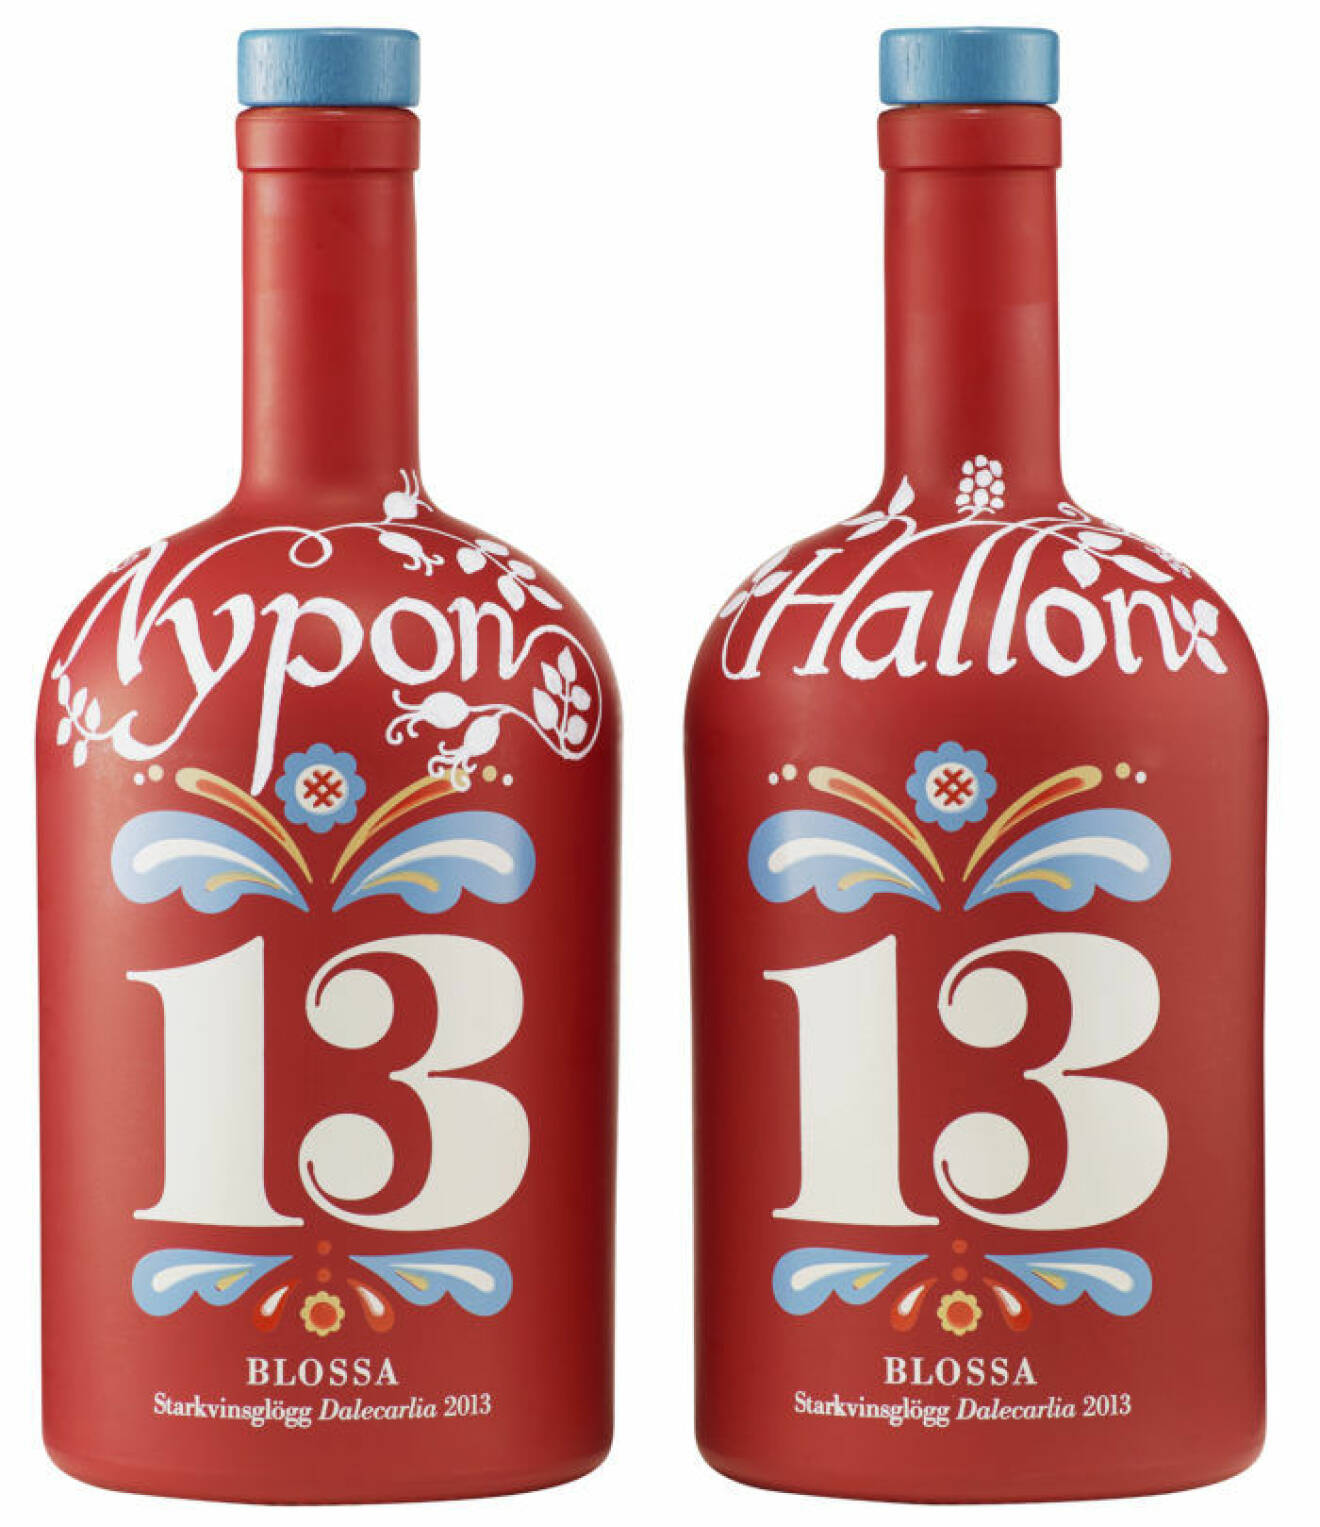 Två flaskor av Blossas årgångsglögg från år 2012, med smak av hallon och nypon.